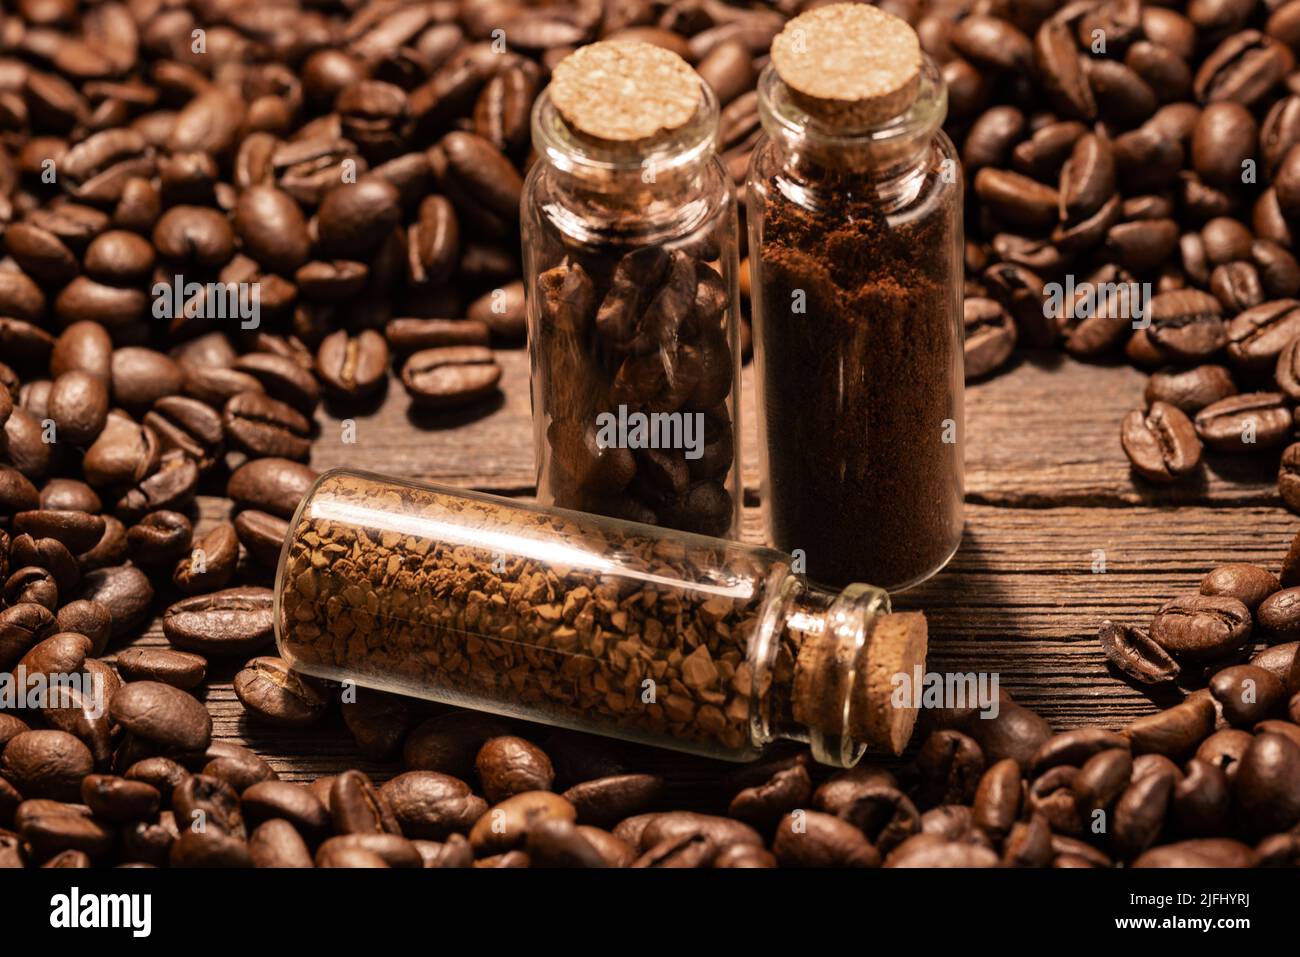 Café moulu et café instantané dans des flacons sur fond de grains de café torréfiés Banque D'Images